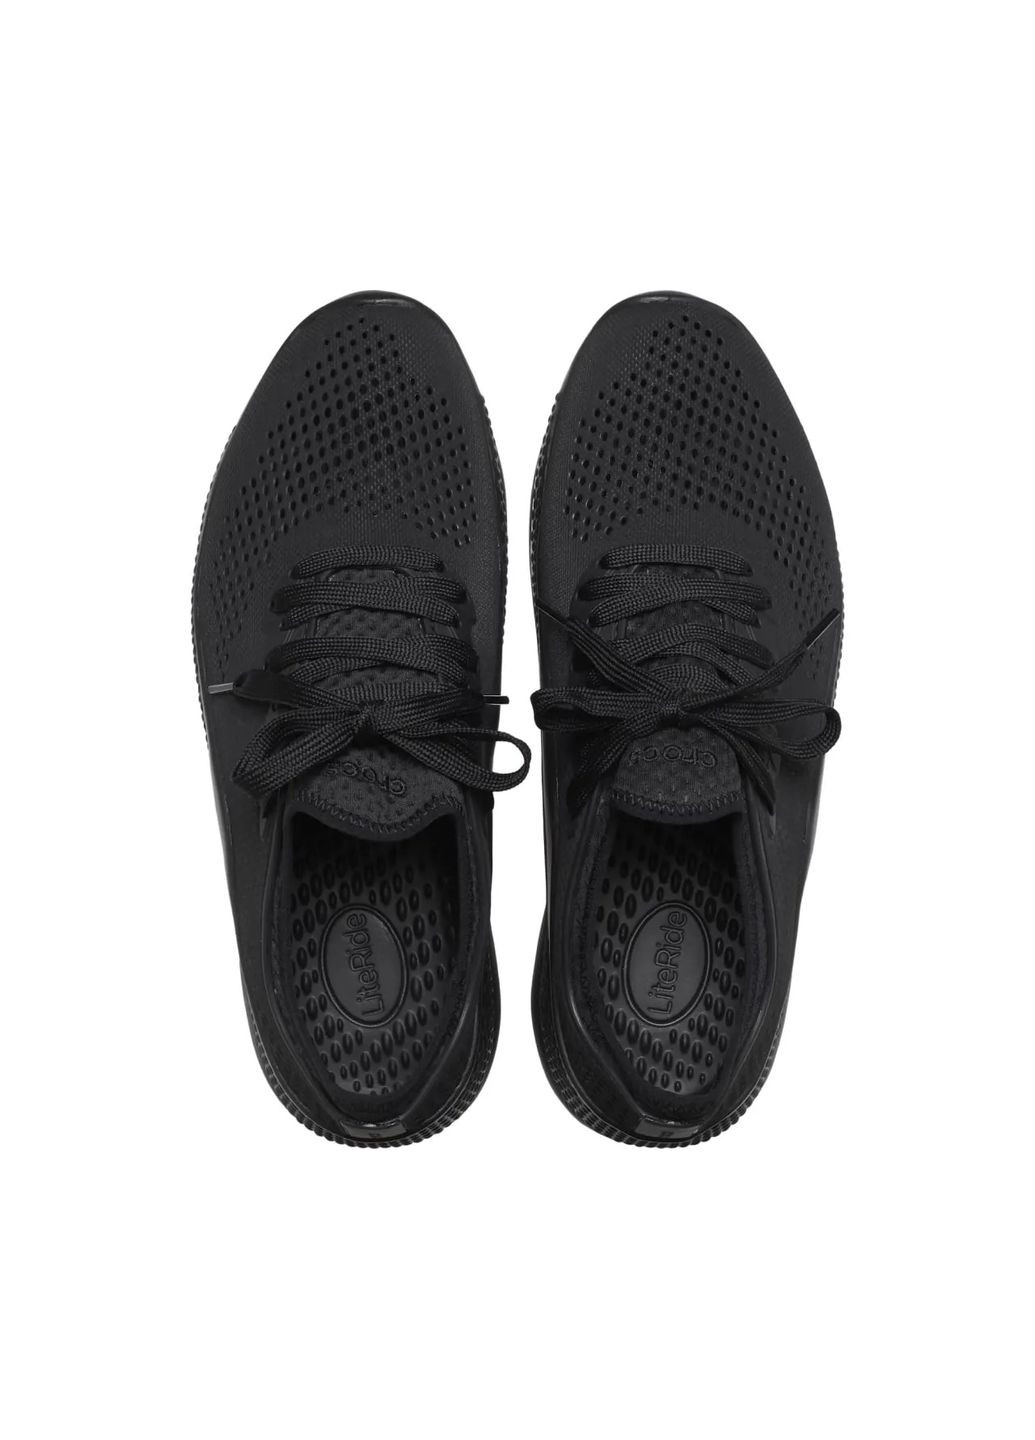 Черные всесезонные кроссовки literide 360 pacer black black m8w10\40\26 см. 206705 Crocs